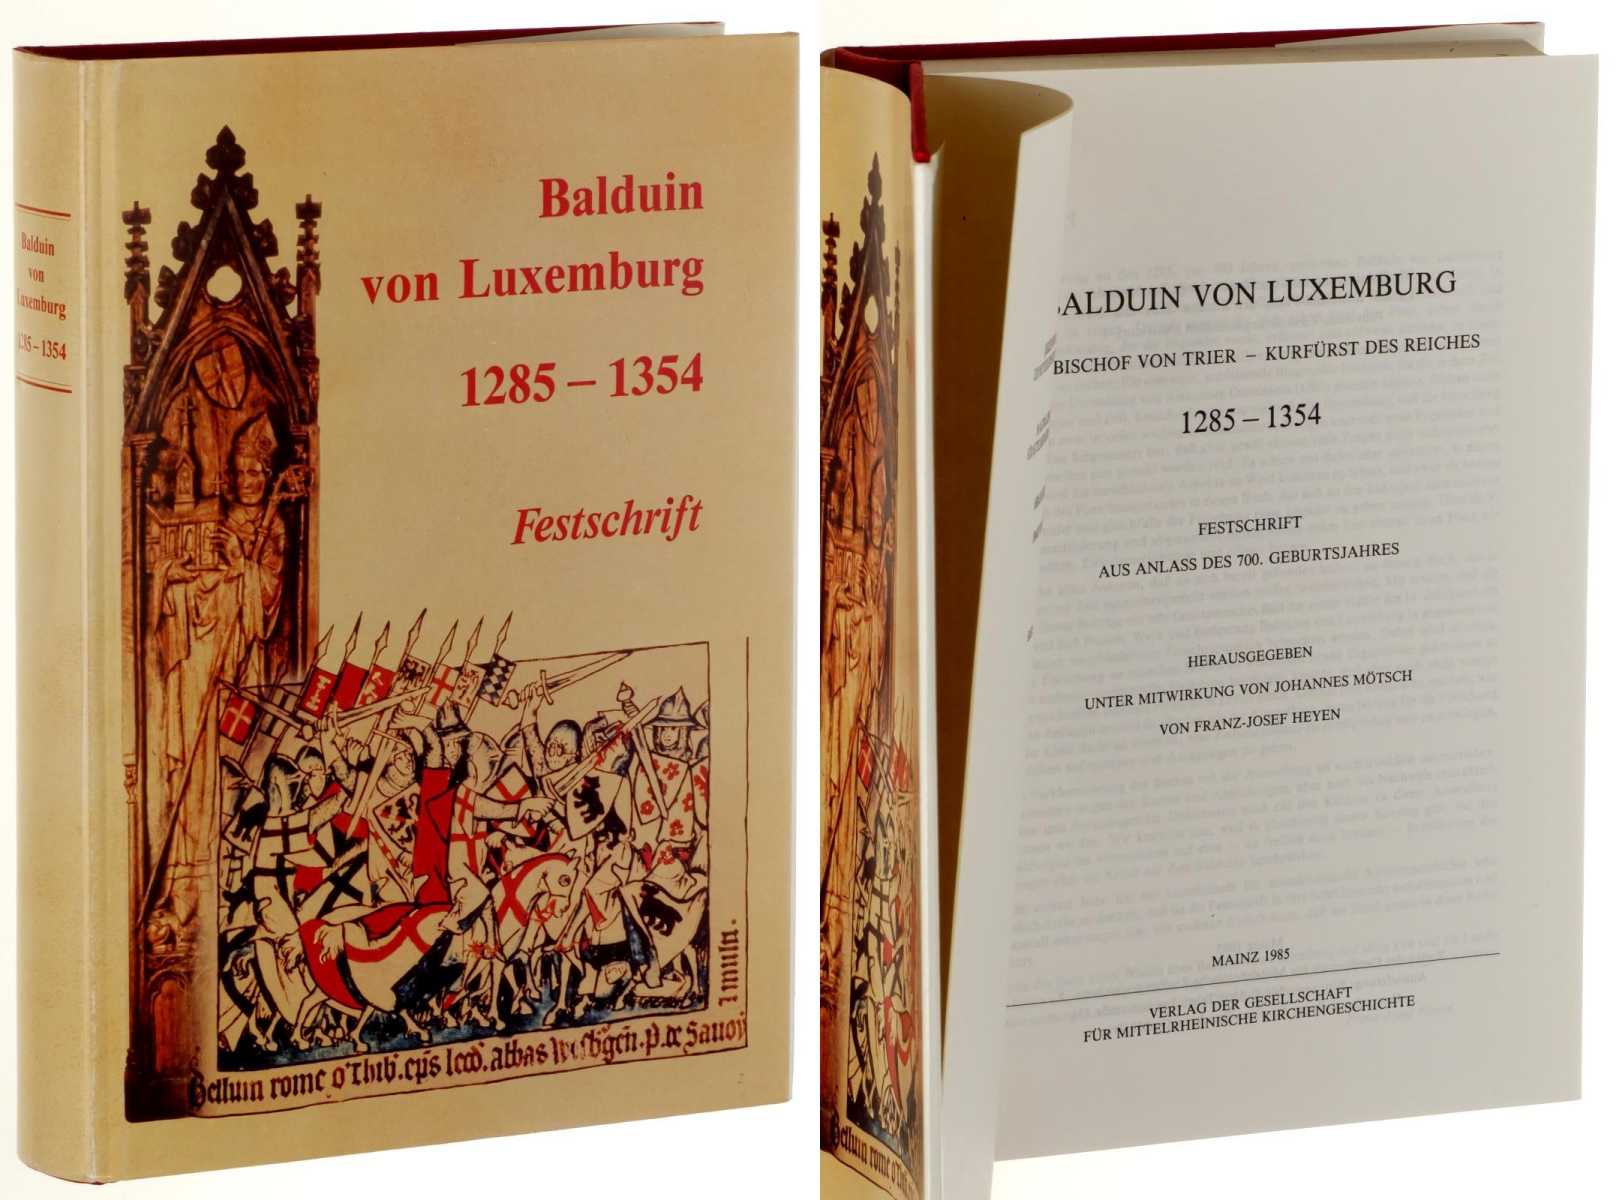   Balduin von Luxemburg. Erzbischof von Trier - Kurfürst des Reiches. 1285-1354. Festschrift aus Anlaß des 700. Geburtsjahres. Hrsg. Franz-Josef von Heyen. 